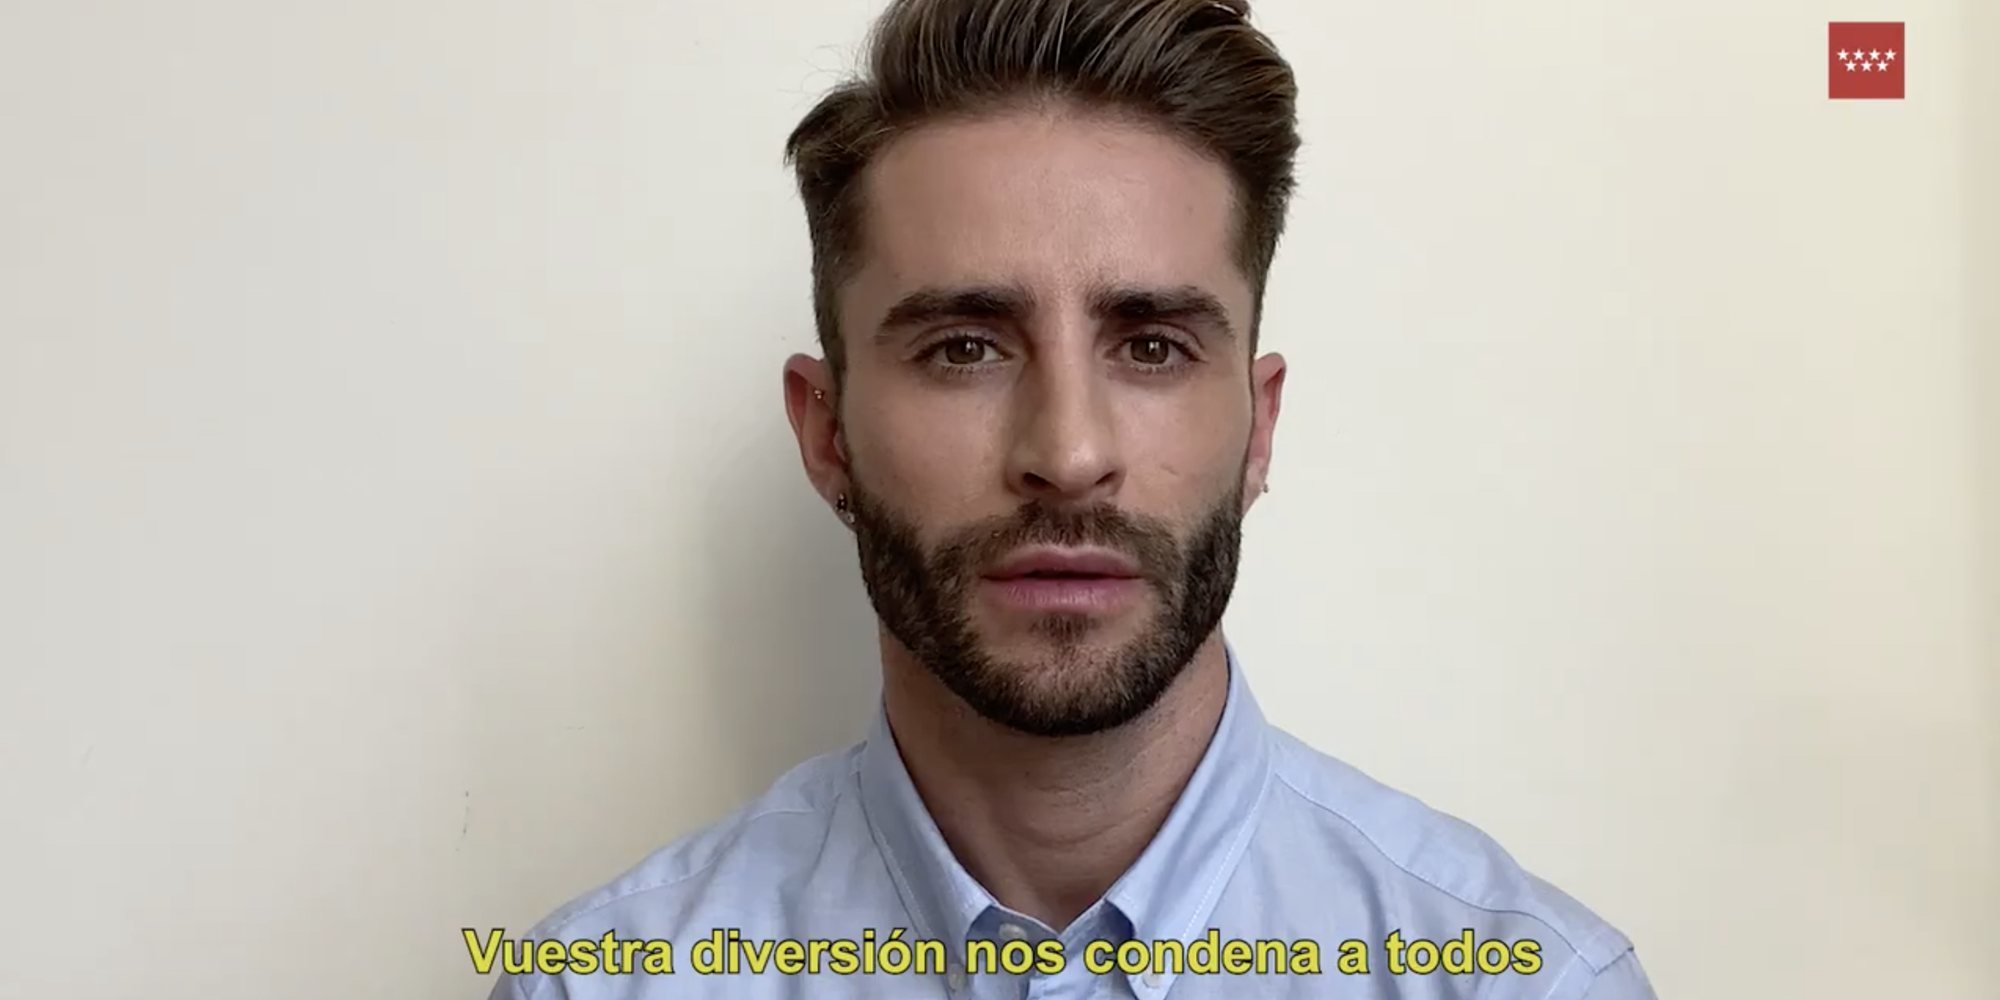 El criticado vídeo de Pelayo Díaz apelando a la responsabilidad de los jóvenes ante la Covid-19